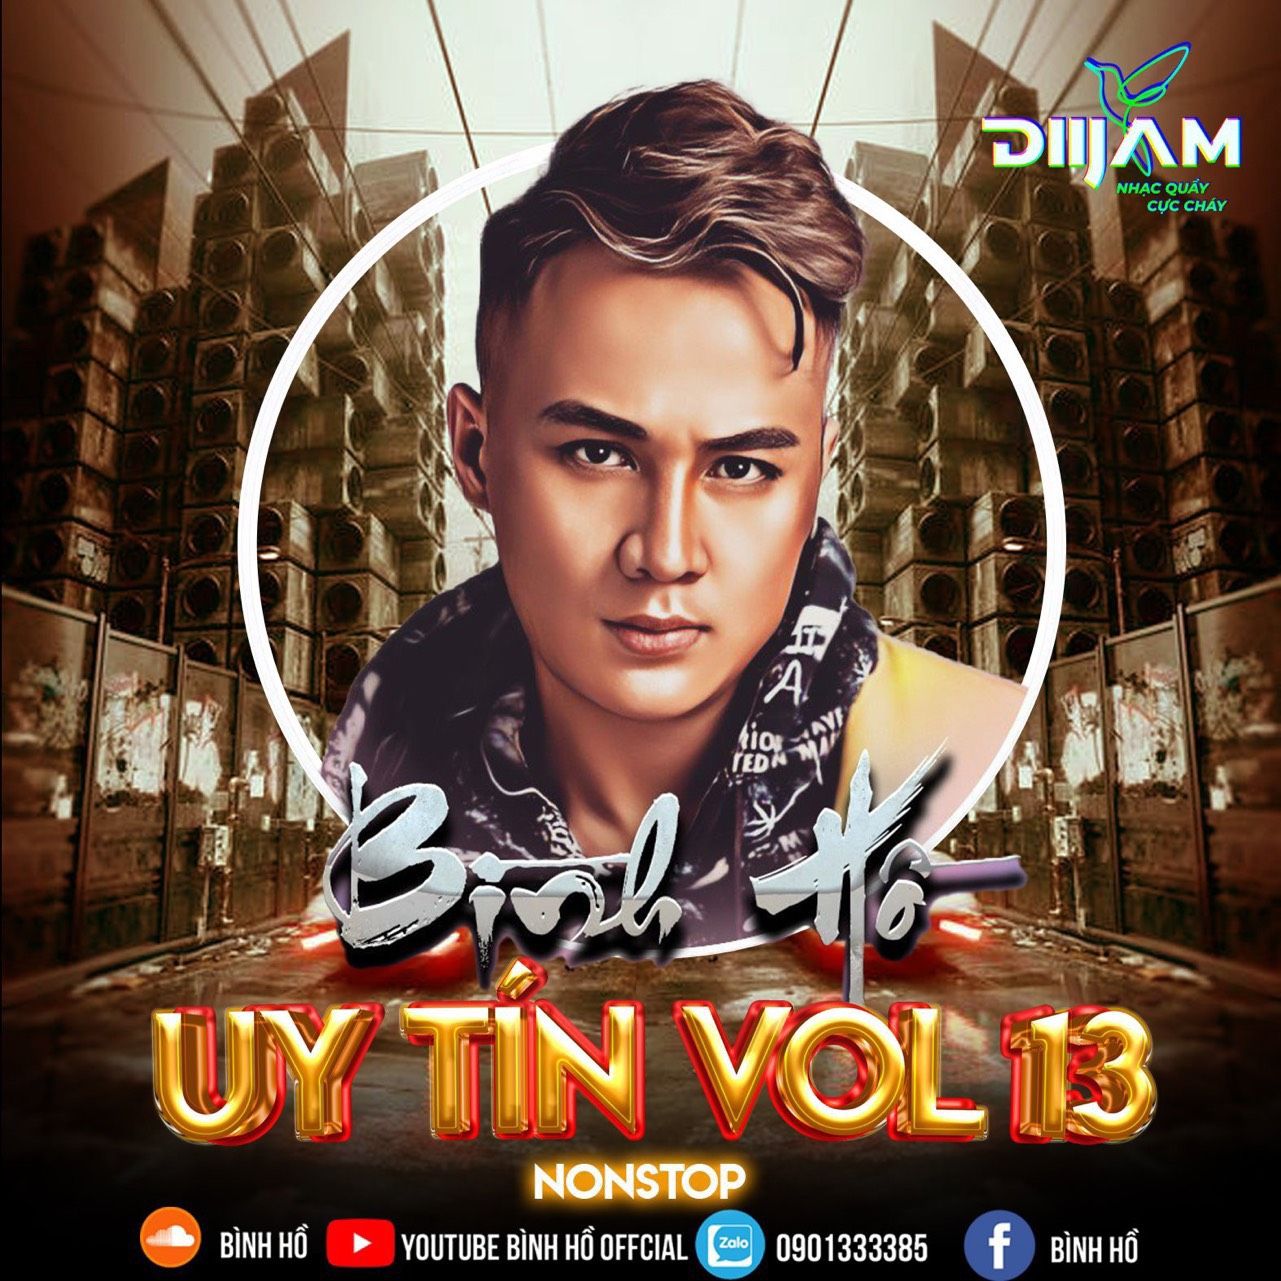 Tikiake Nonstop Uy Tín Vol.13 ( Bình Hồ Mix)